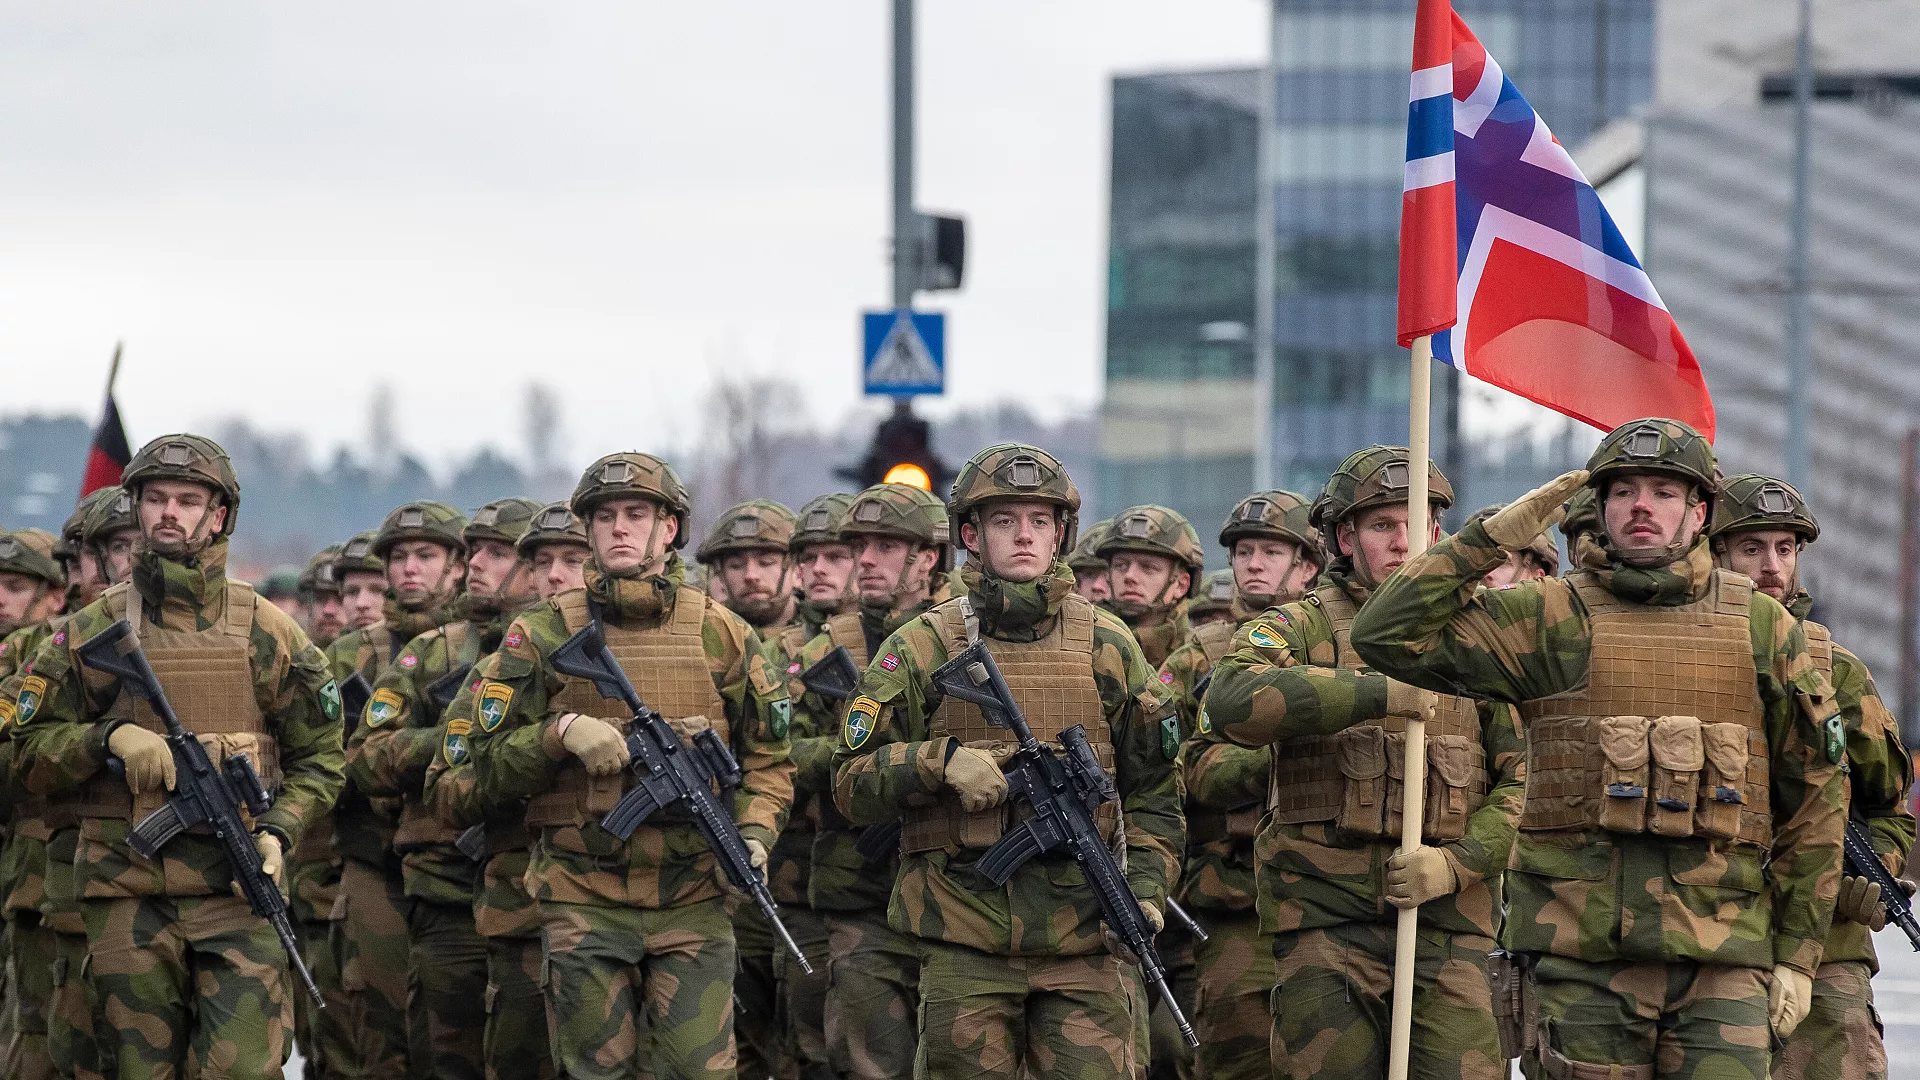 kercenimi i mundshem rus norvegjia ndjek hapat e danimarkes planifikon rekrutime masive ne ushtri